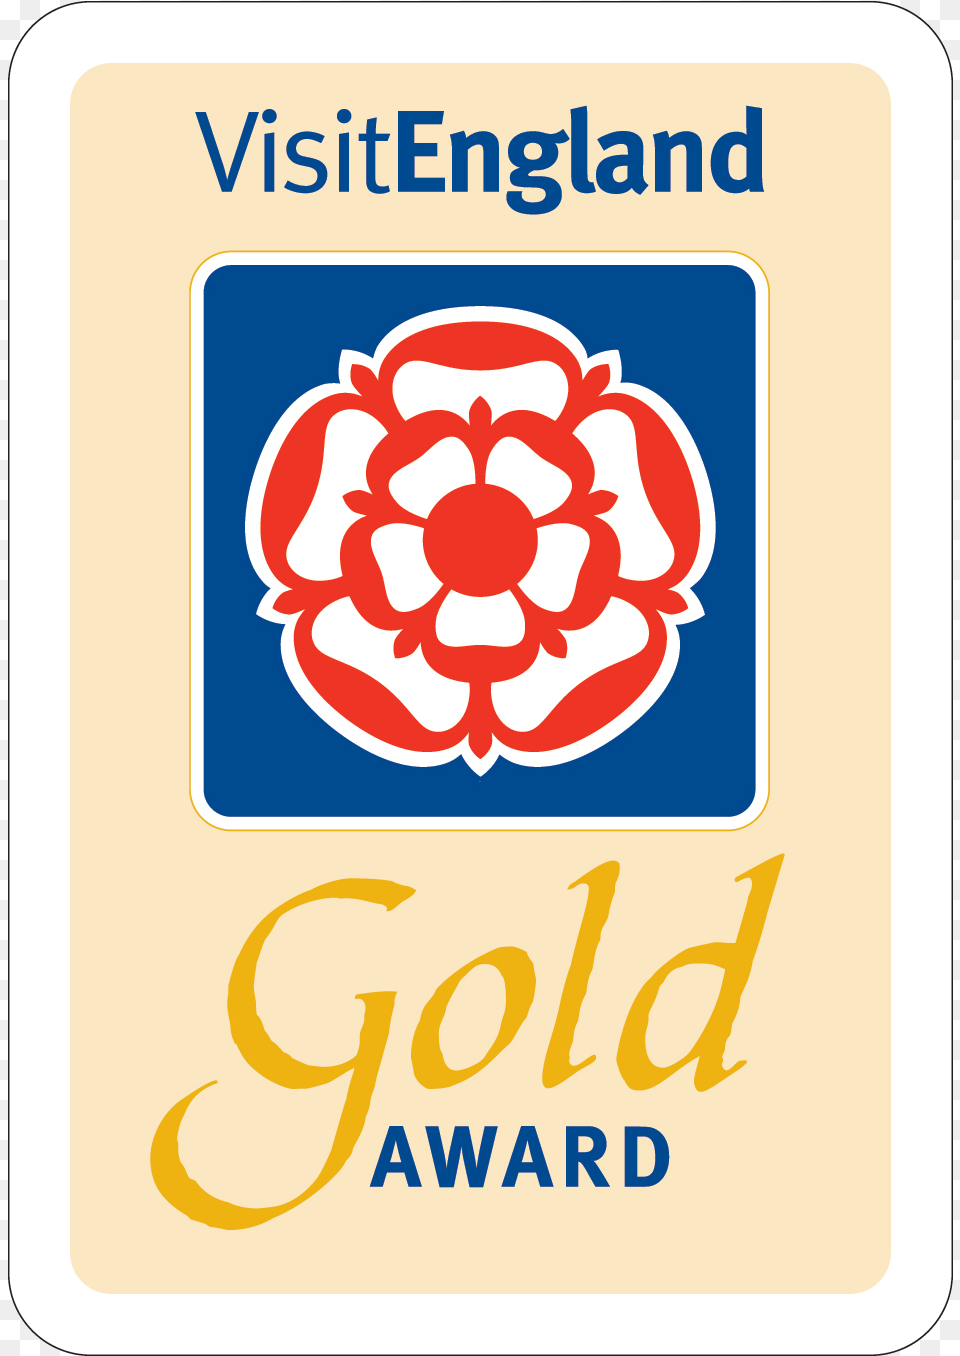 Multi Award Winning Dimpsey Glamping Visit England Gold Award, Sticker, Text, Logo, Flower Png